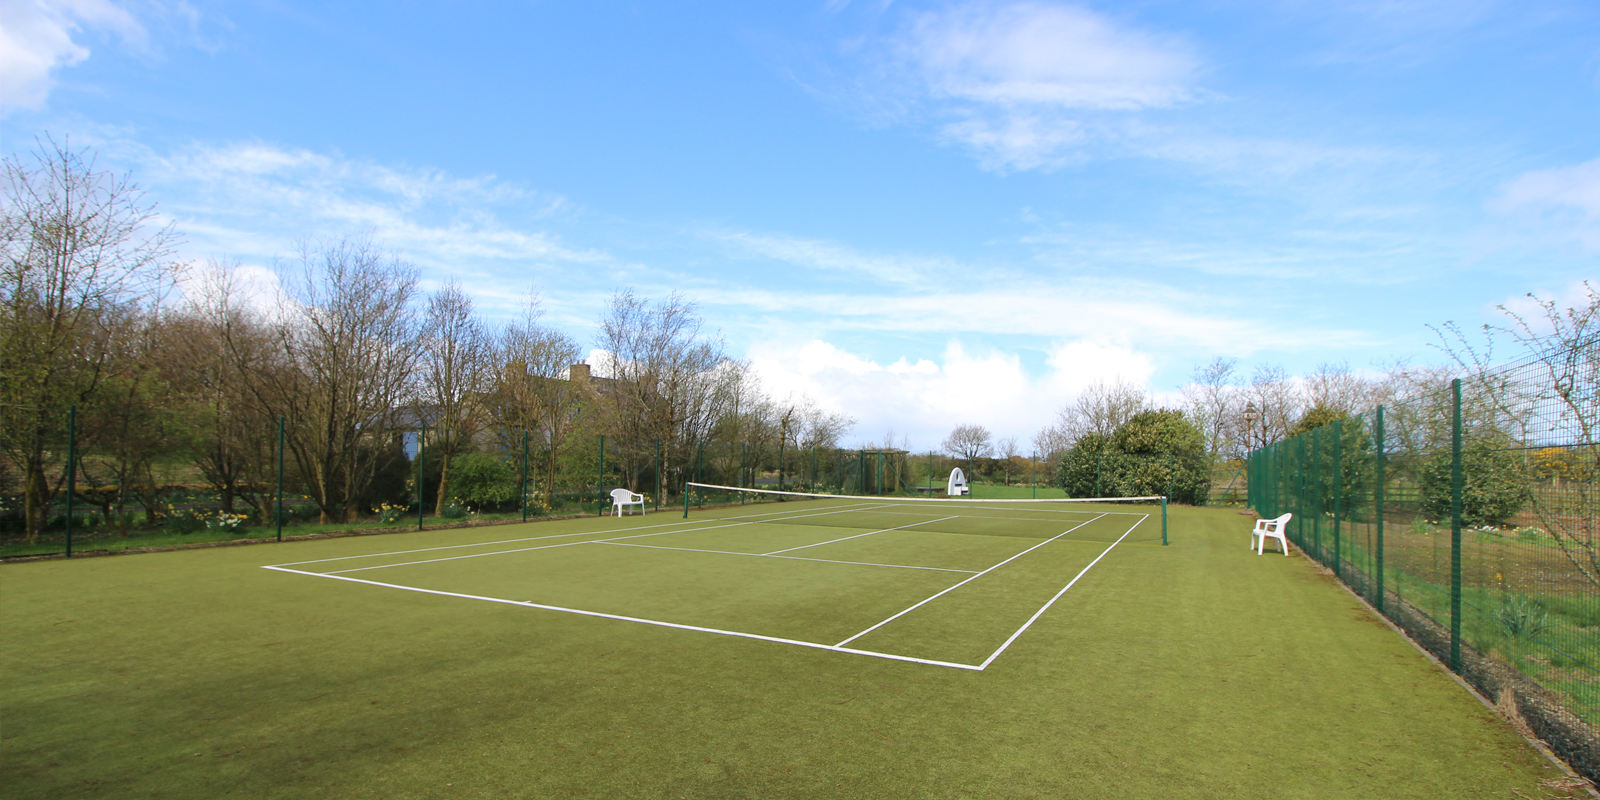 clonaslee-tennis-court-slider-5-new